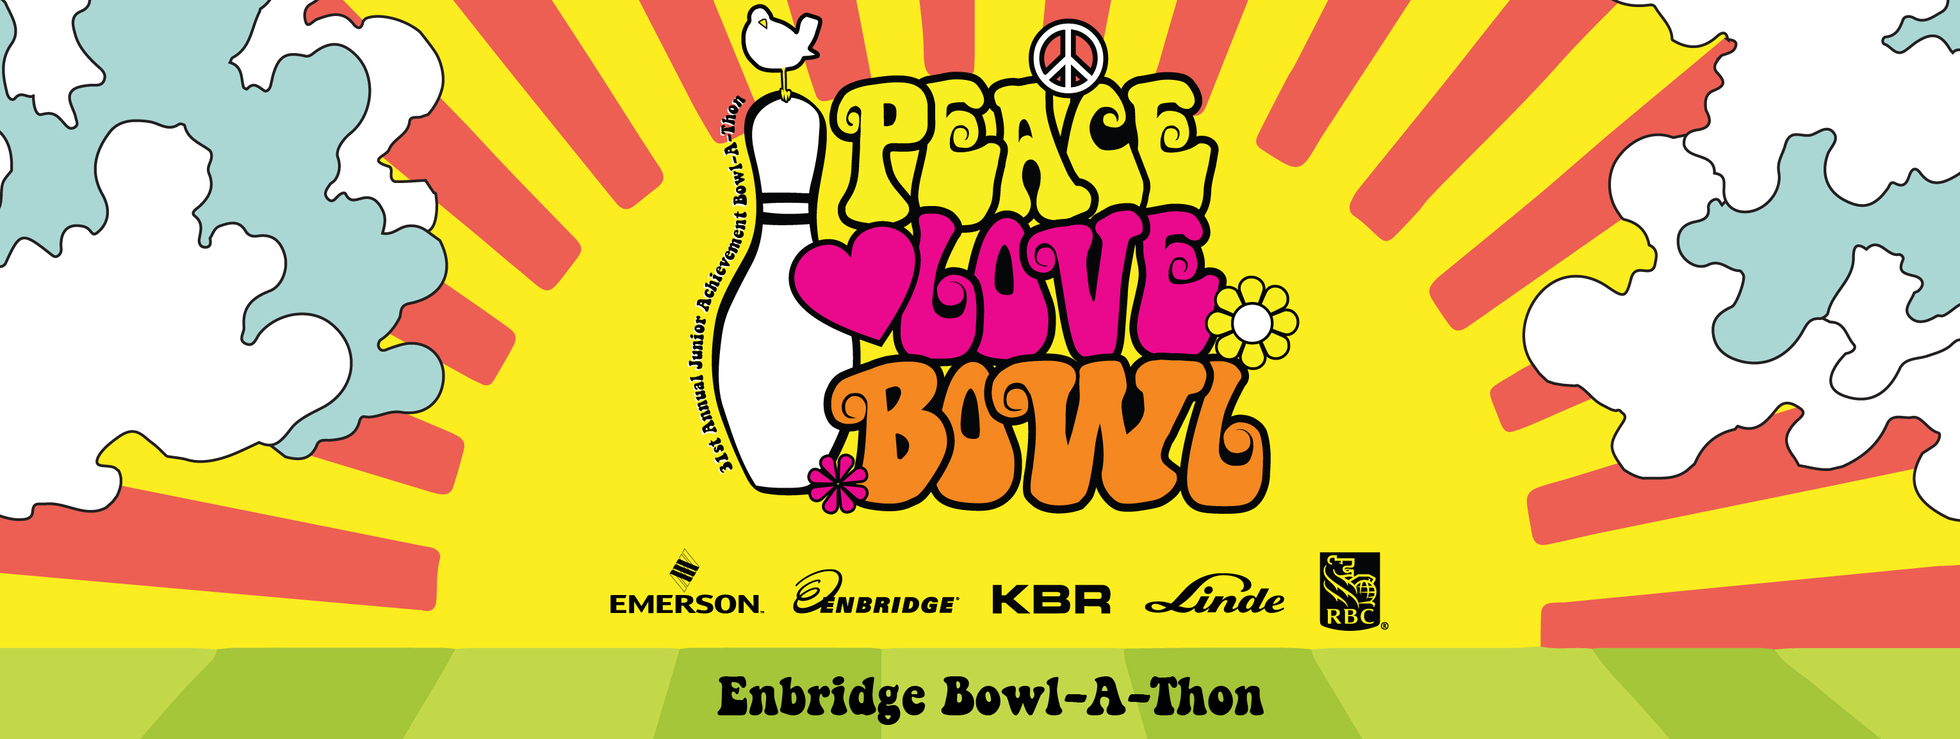 Enbridge Bowl-A-Thon